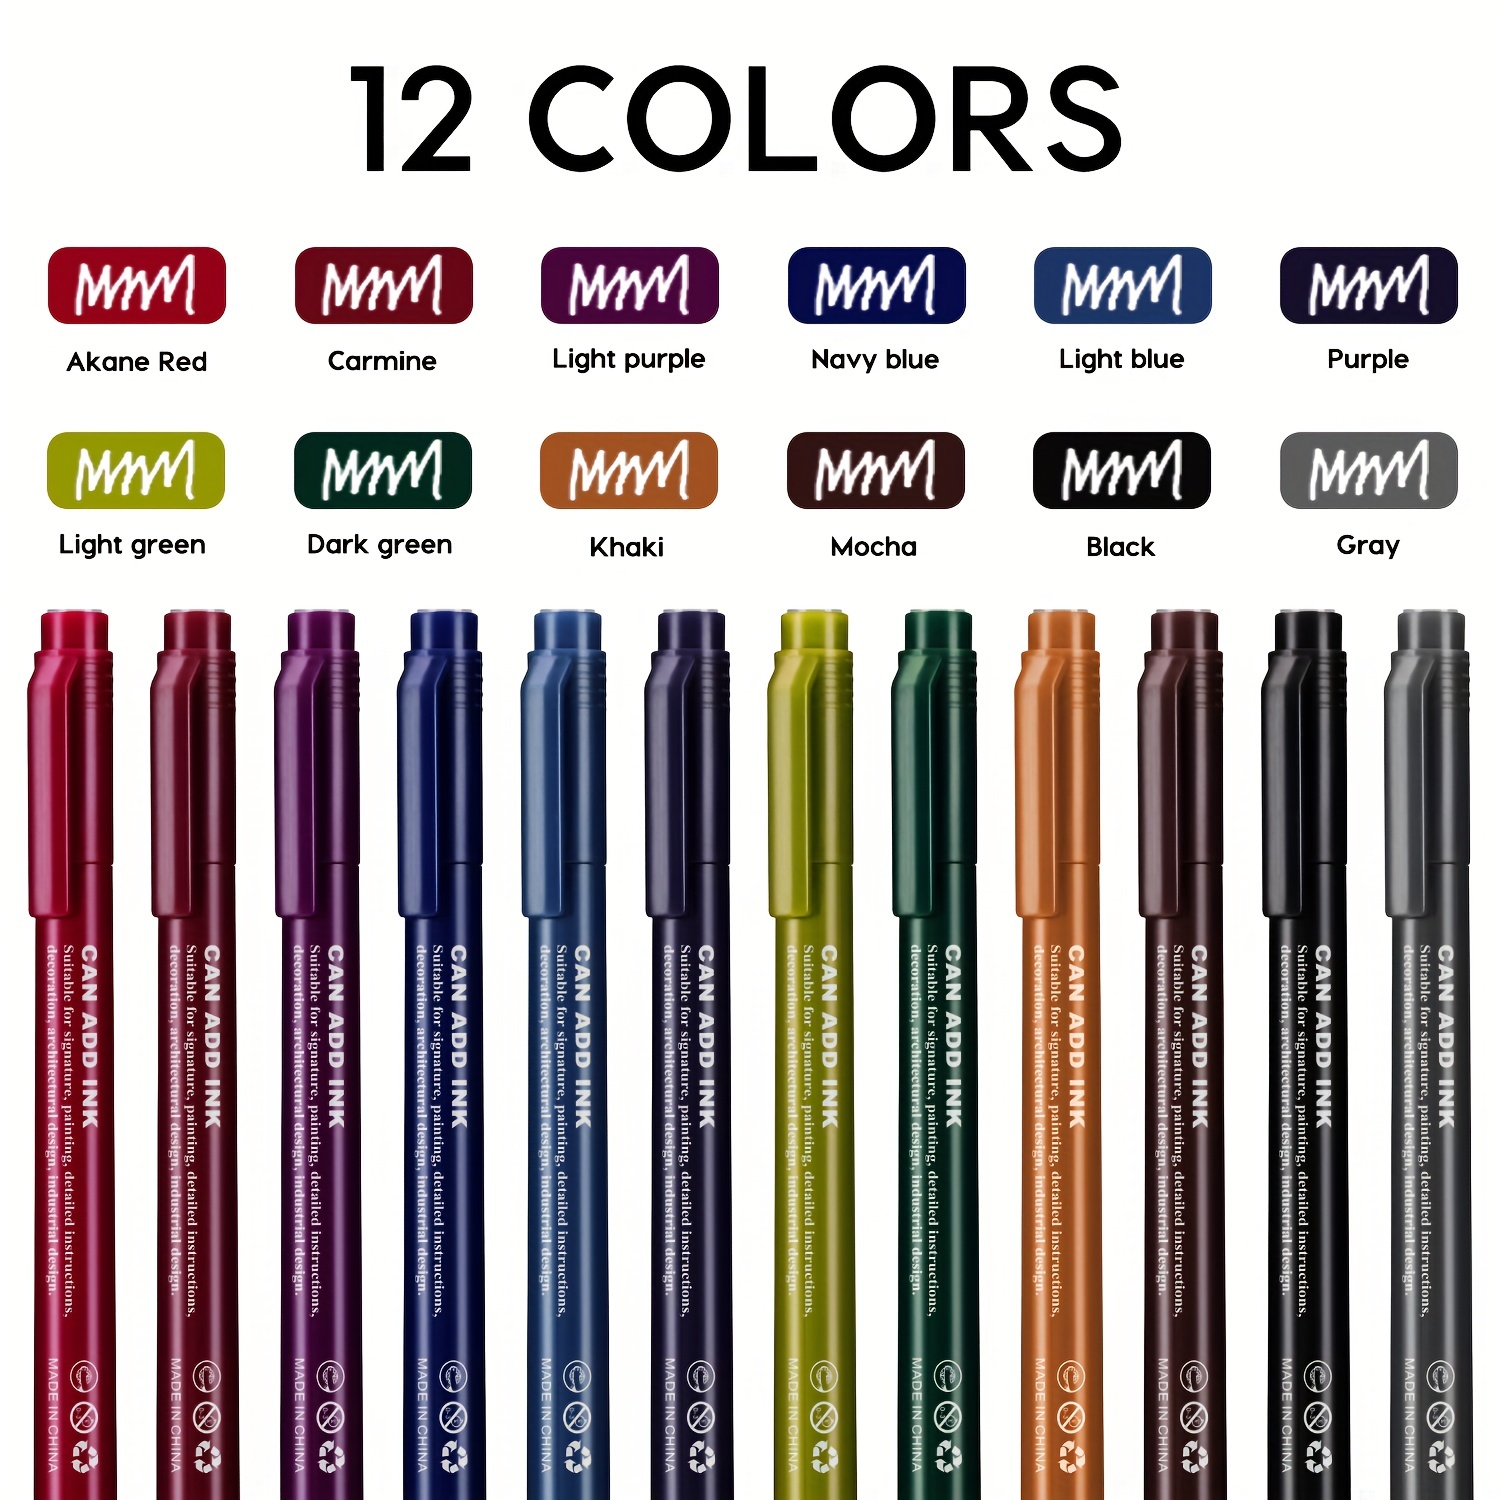 7 pen set – Designs By Us 2021